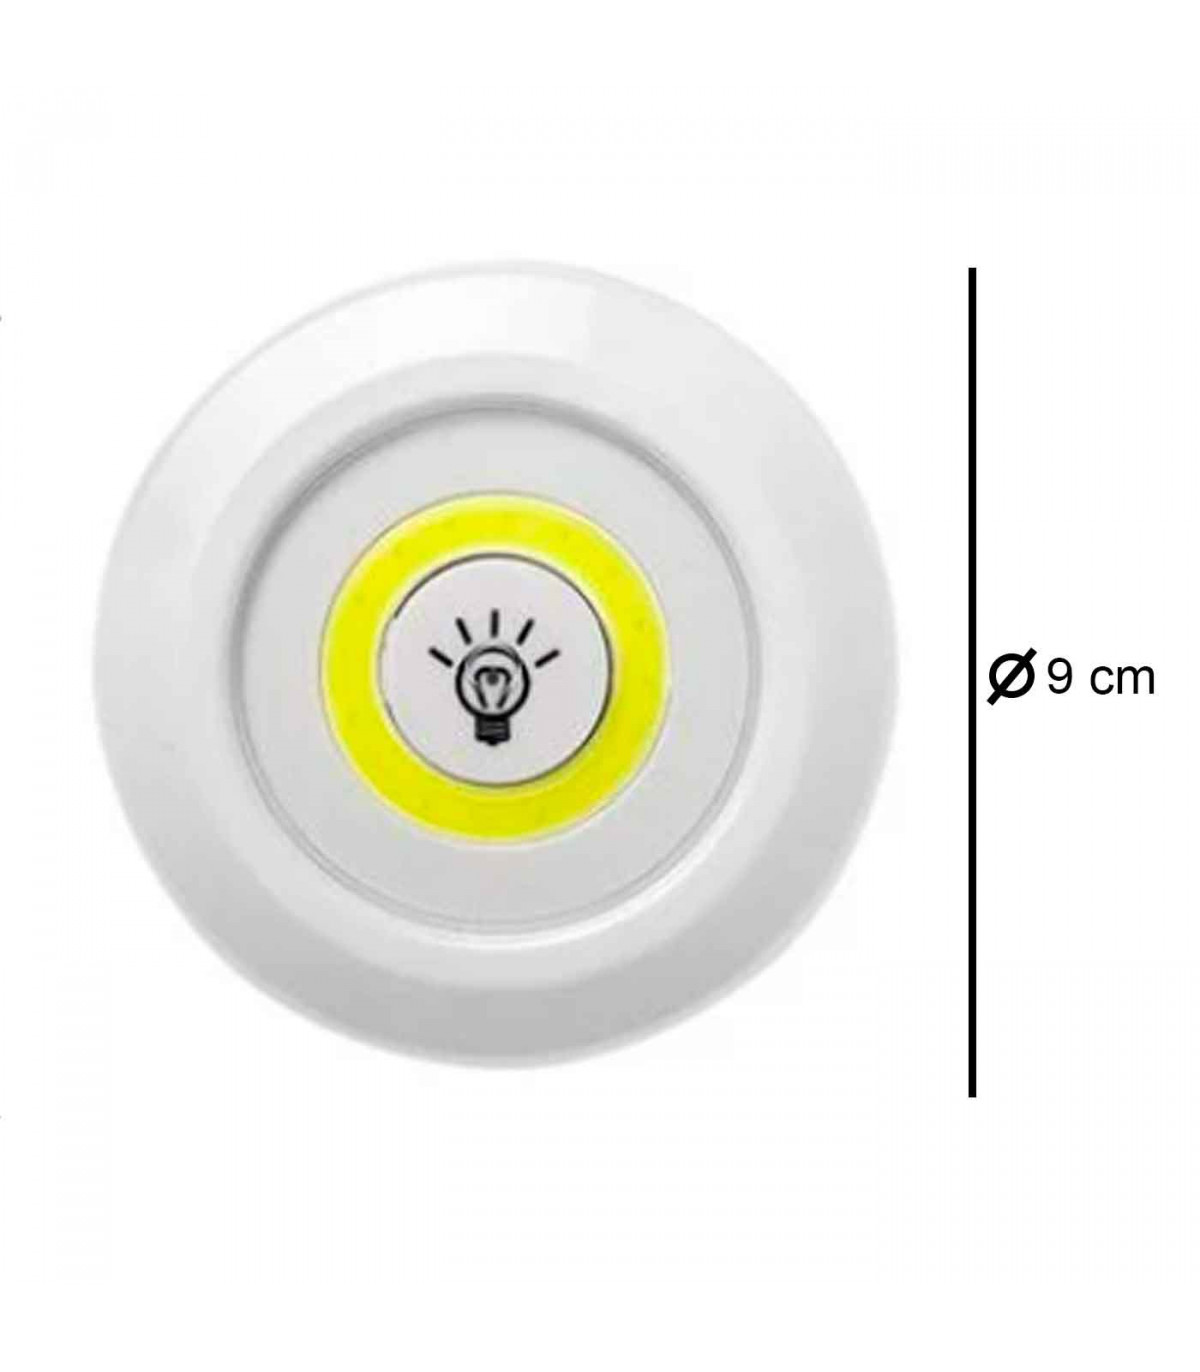 Luz auxiliar COB con mando a distancia color blanco, 3 pilas AAA (No  incluidas). Luz de 9 cm de diámetro.